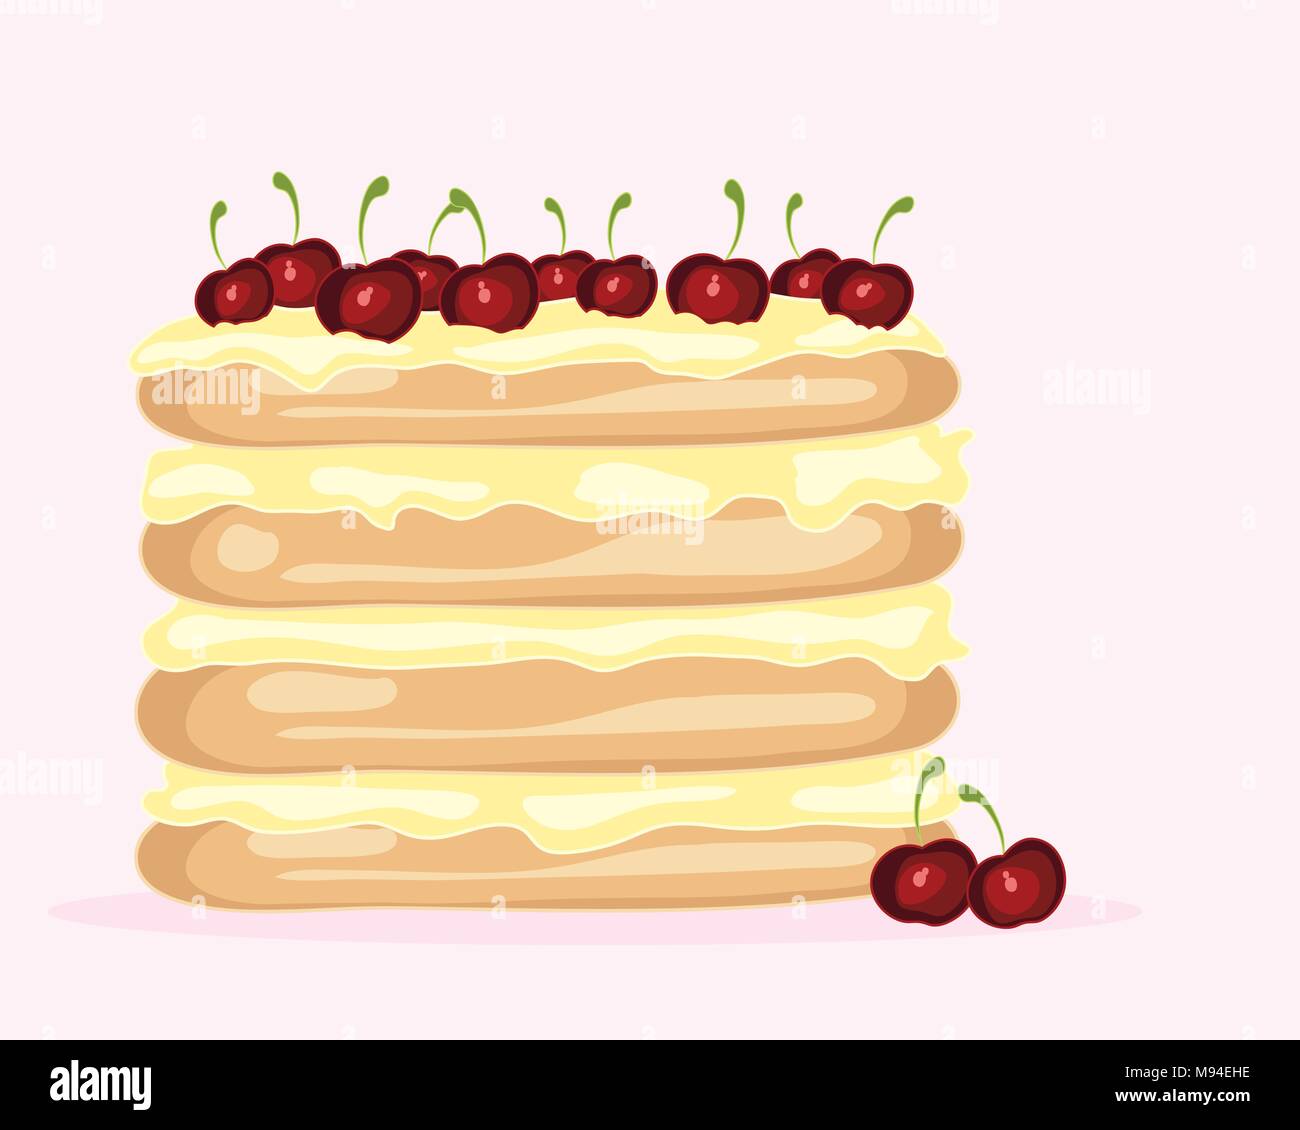 Un vecteur illustration en eps 8 format d'une cerise créatif layer cake avec de la crème fraîche et les couches d'éponge juteuse cerise rouge pour la décoration Illustration de Vecteur